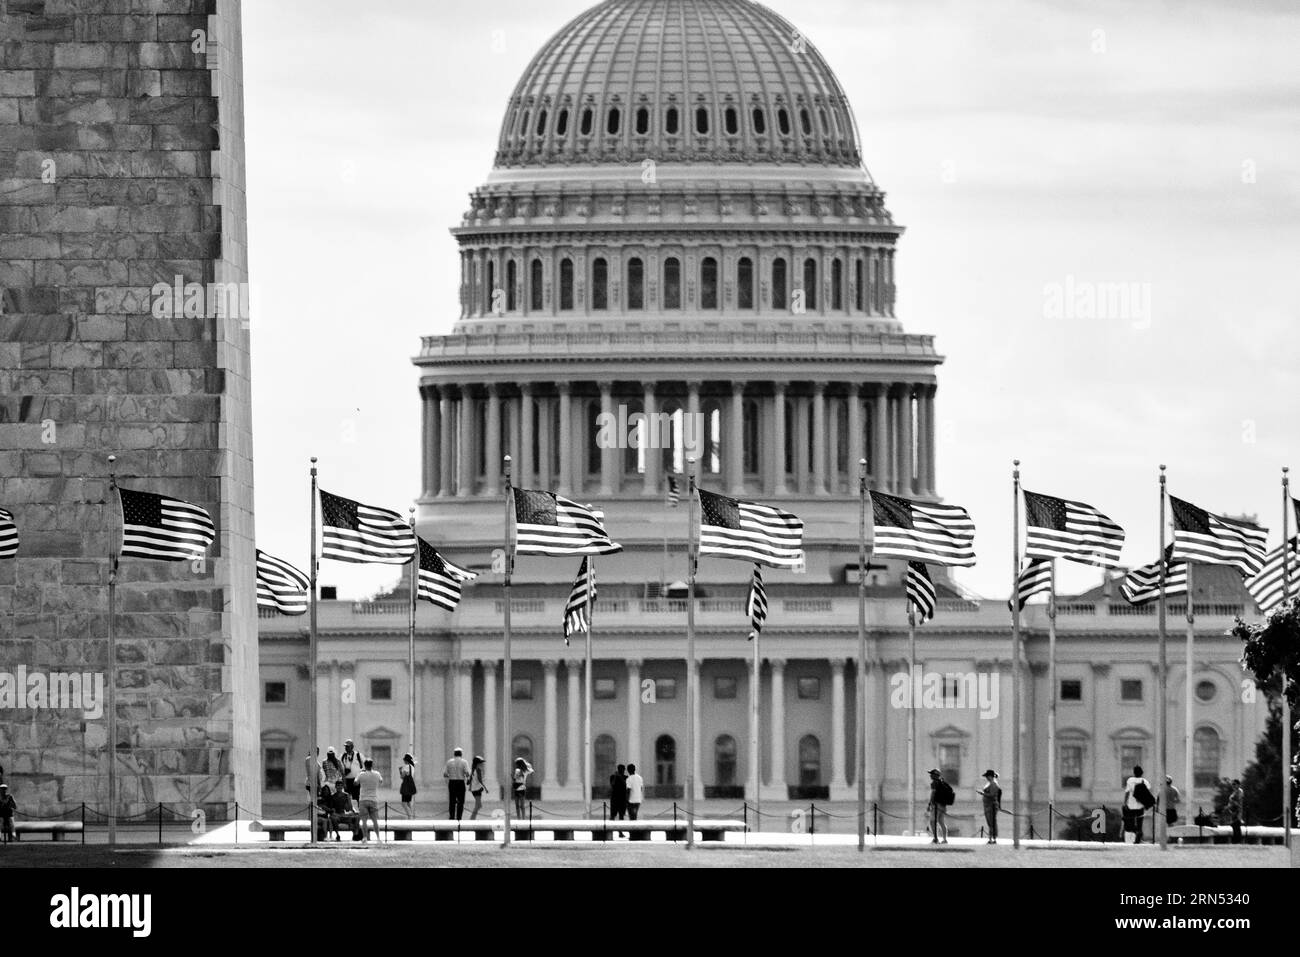 WASHINGTON, DC - La cúpula distintiva del edificio del Capitolio de EE.UU. Se encuentra en Capitol Hill, cerca del centro de Washington DC, en el extremo oriental del National Mall. Es el hogar del Congreso de los Estados Unidos. La Cámara de Representantes ocupa un ala, mientras que el Senado ocupa el otro. Foto de stock